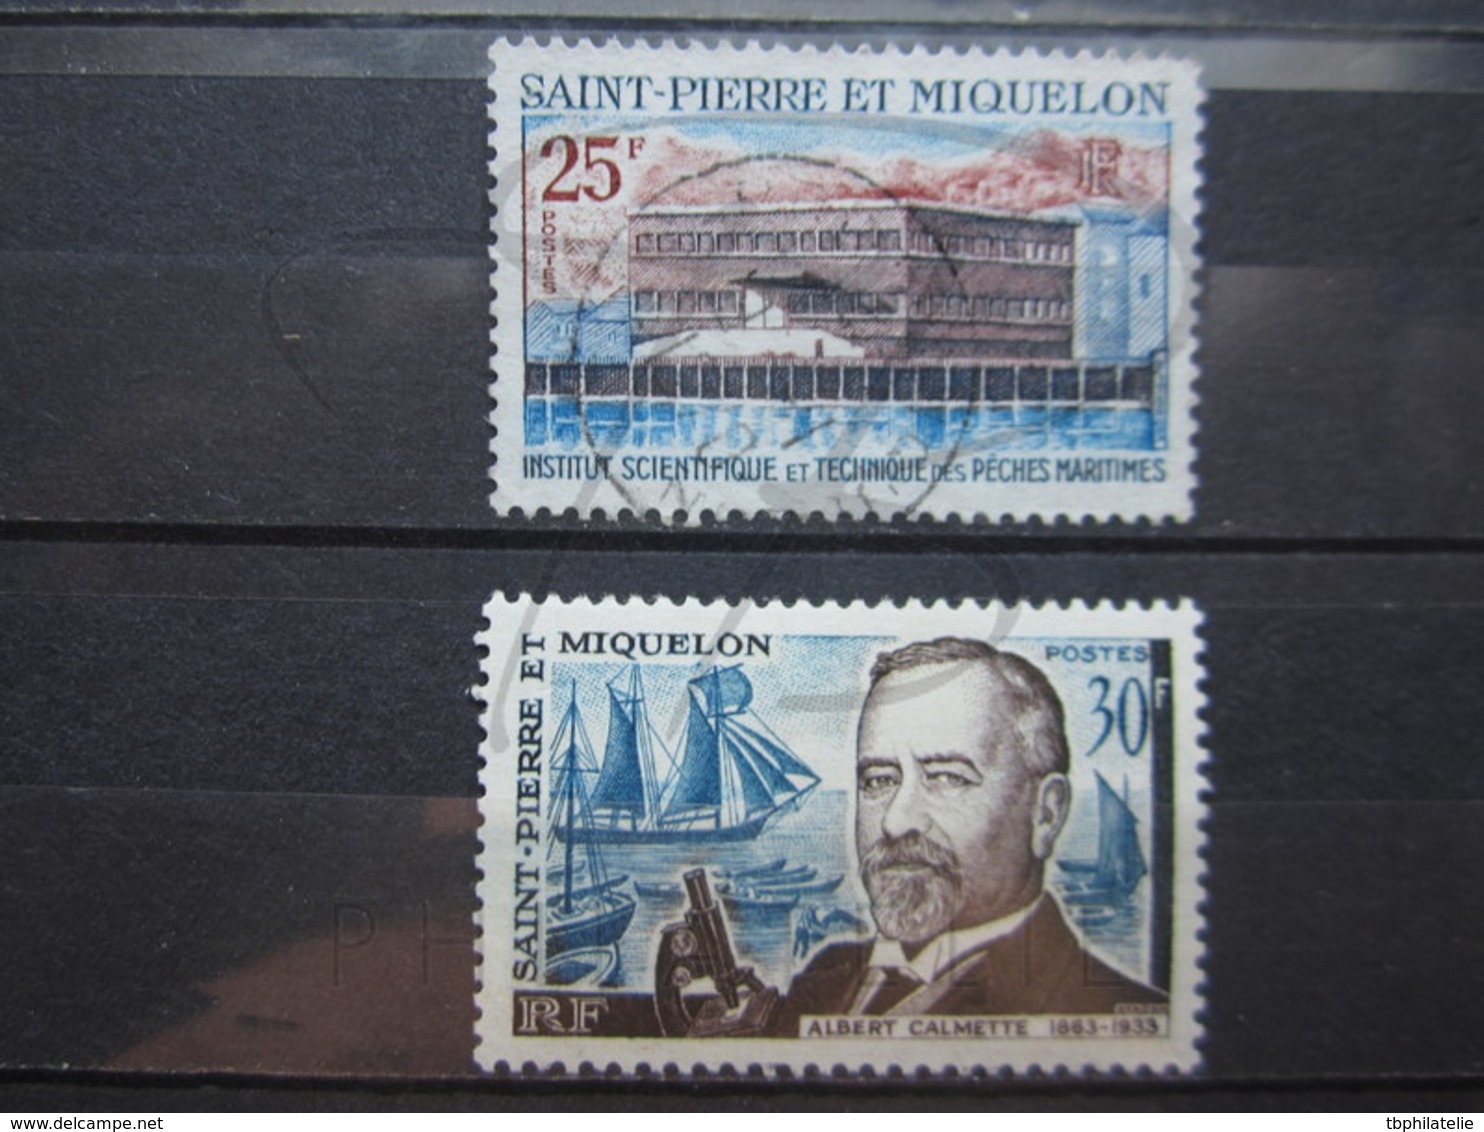 VEND LOT DE TIMBRES DE S.P.M. !!! - Used Stamps